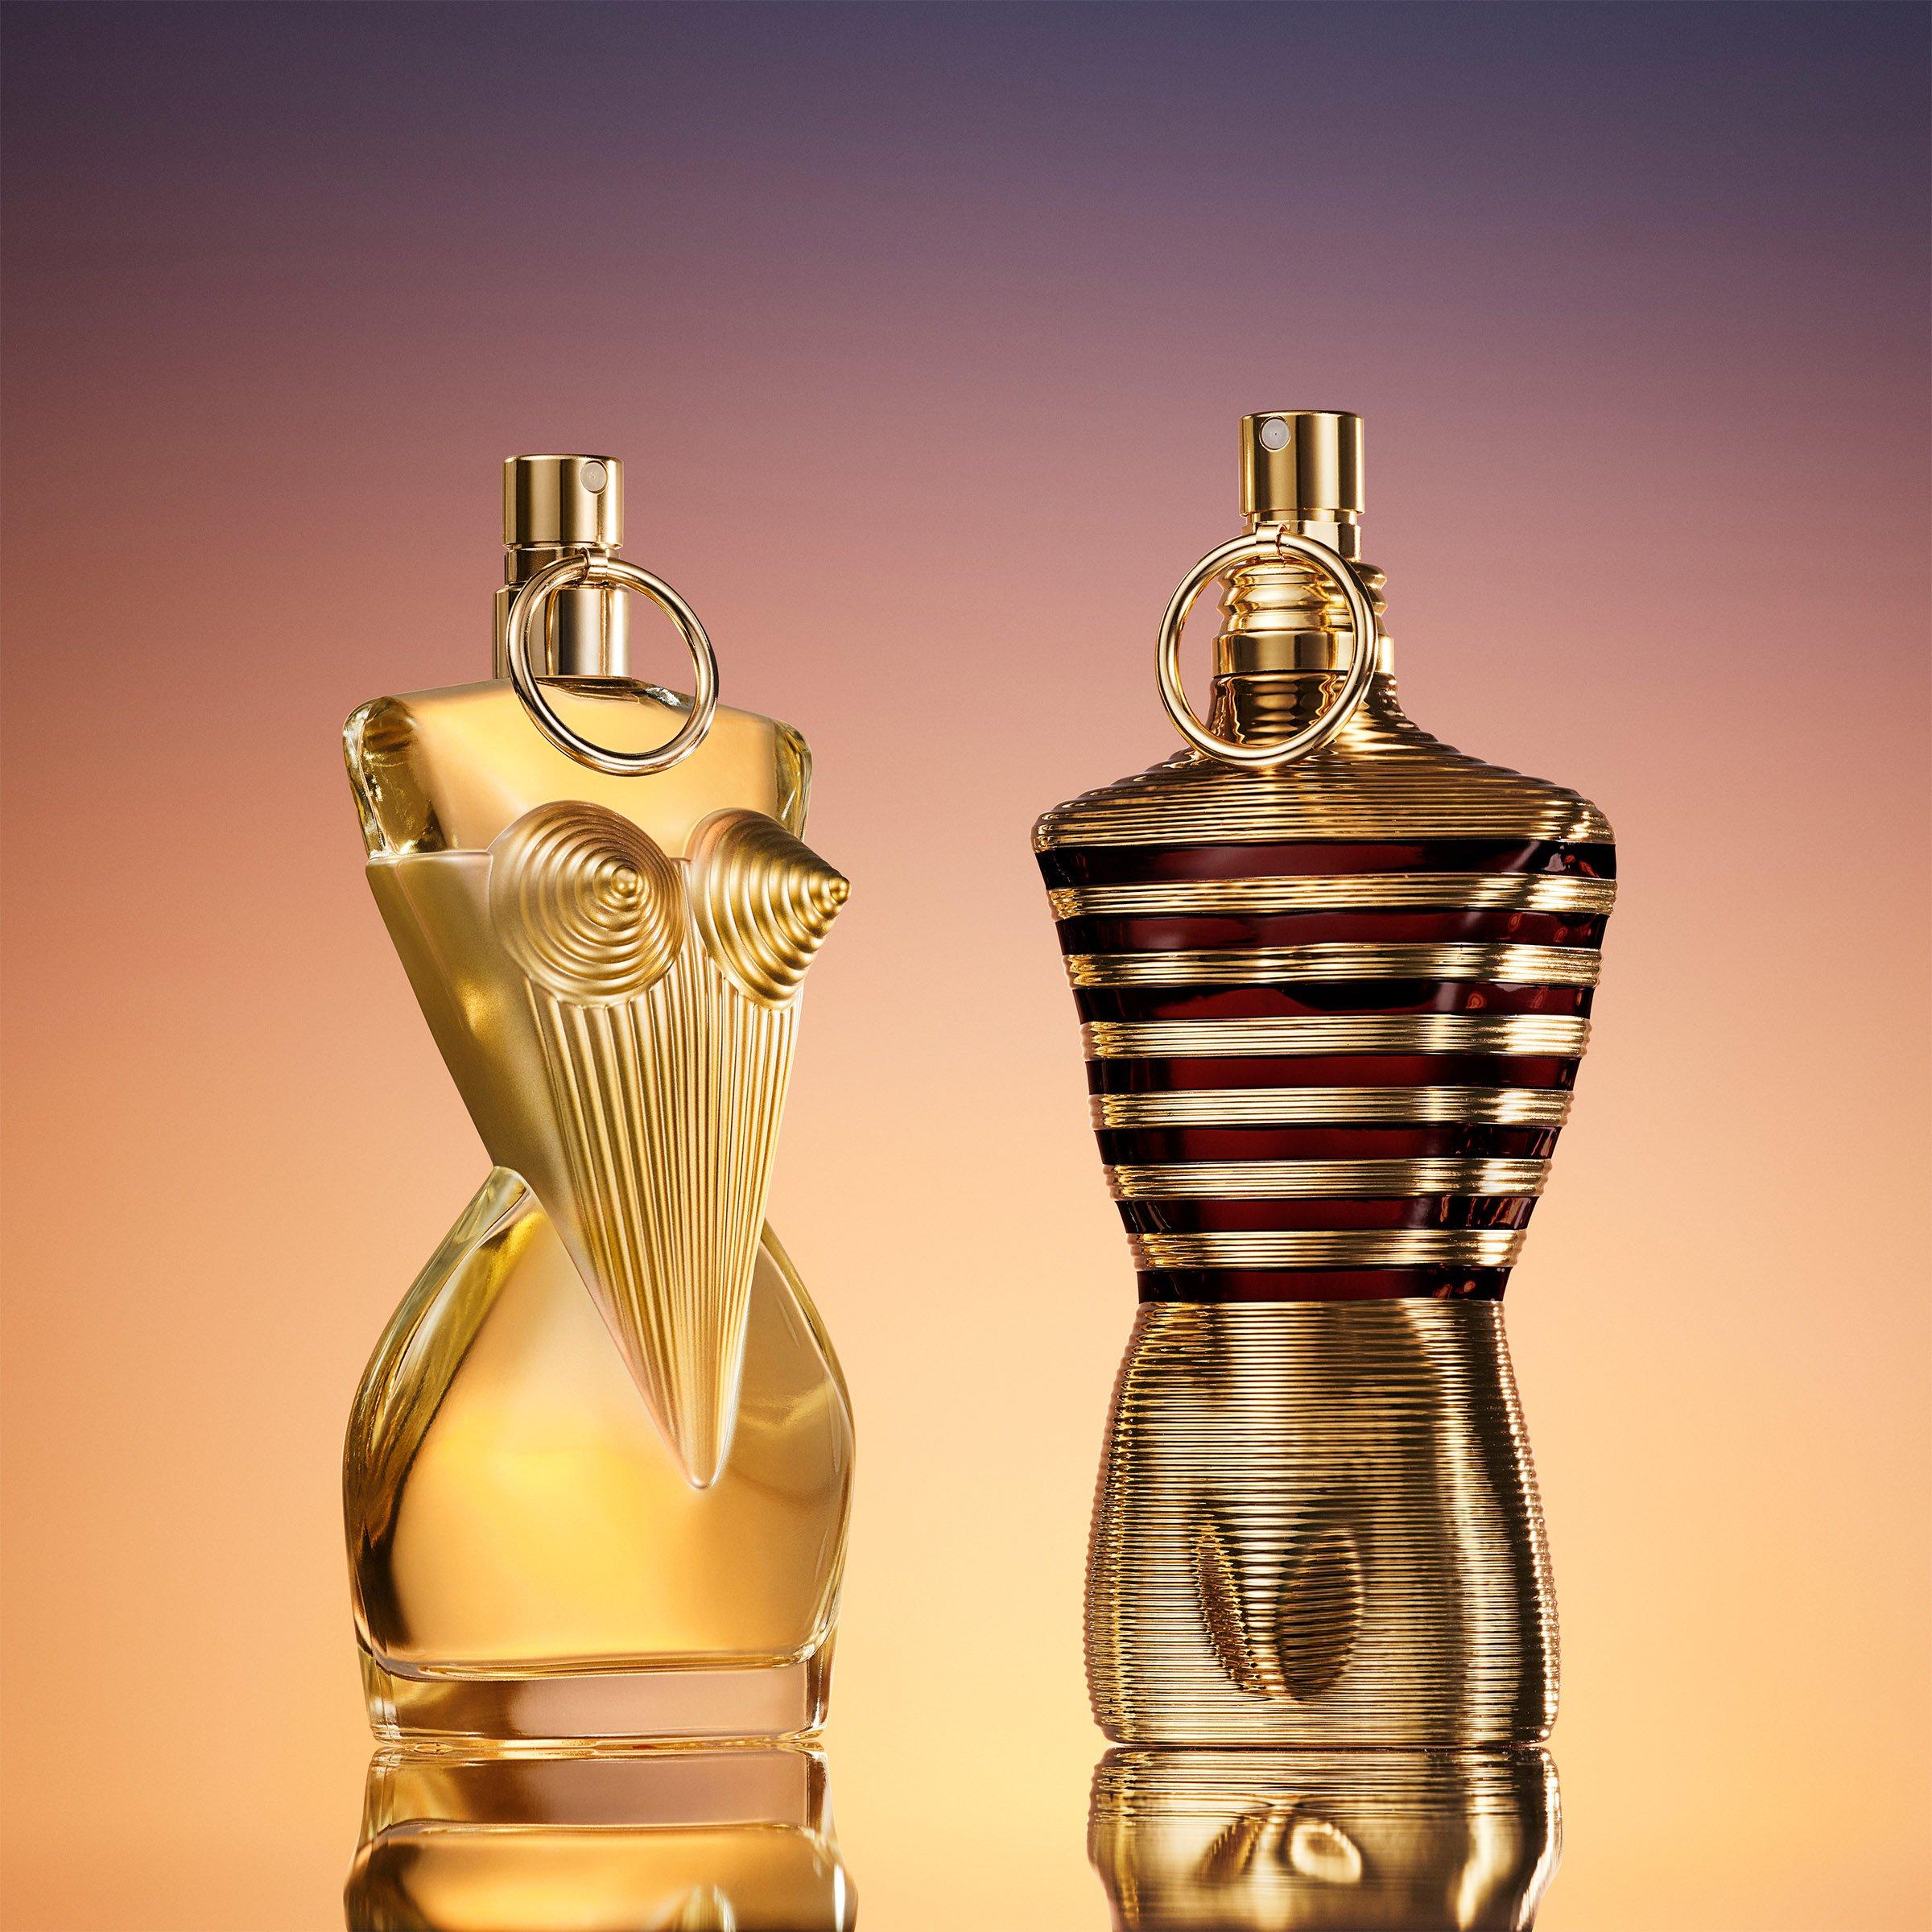 Jean Paul Gaultier Divine Eau de Parfum 50 ml